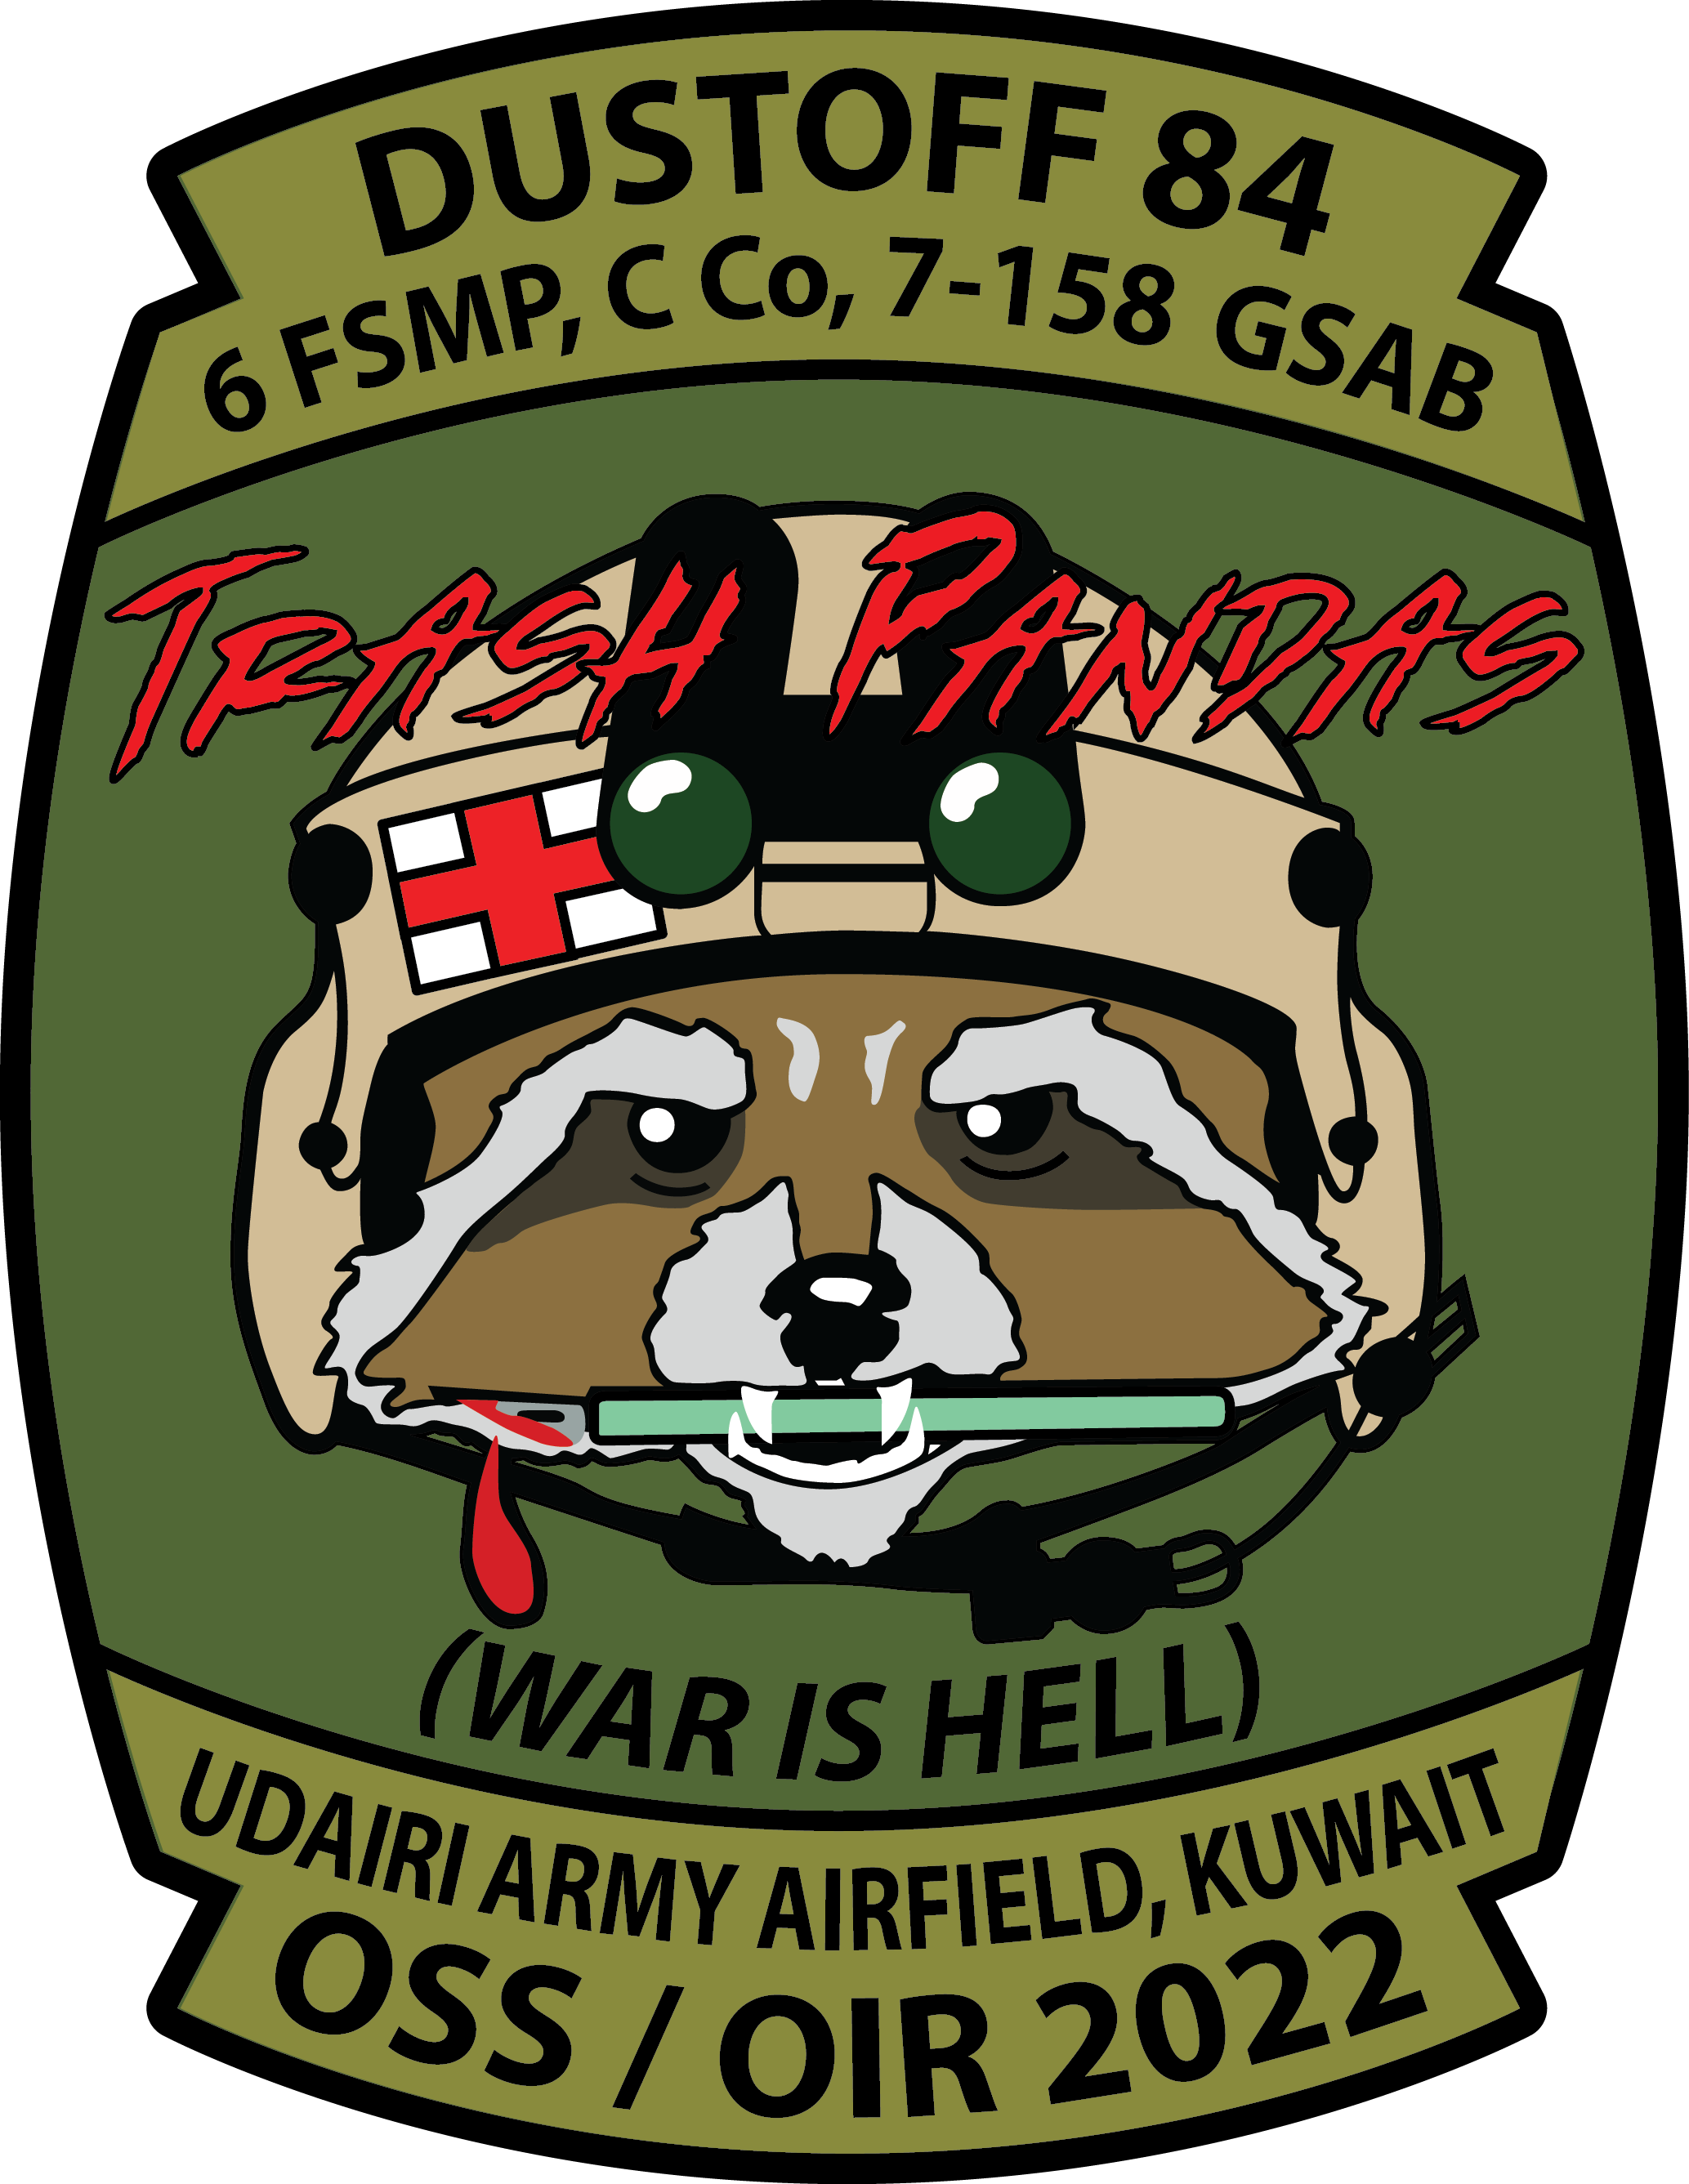 6 FSMP, C Co, 7-158 GSAB "Trash Pandas"